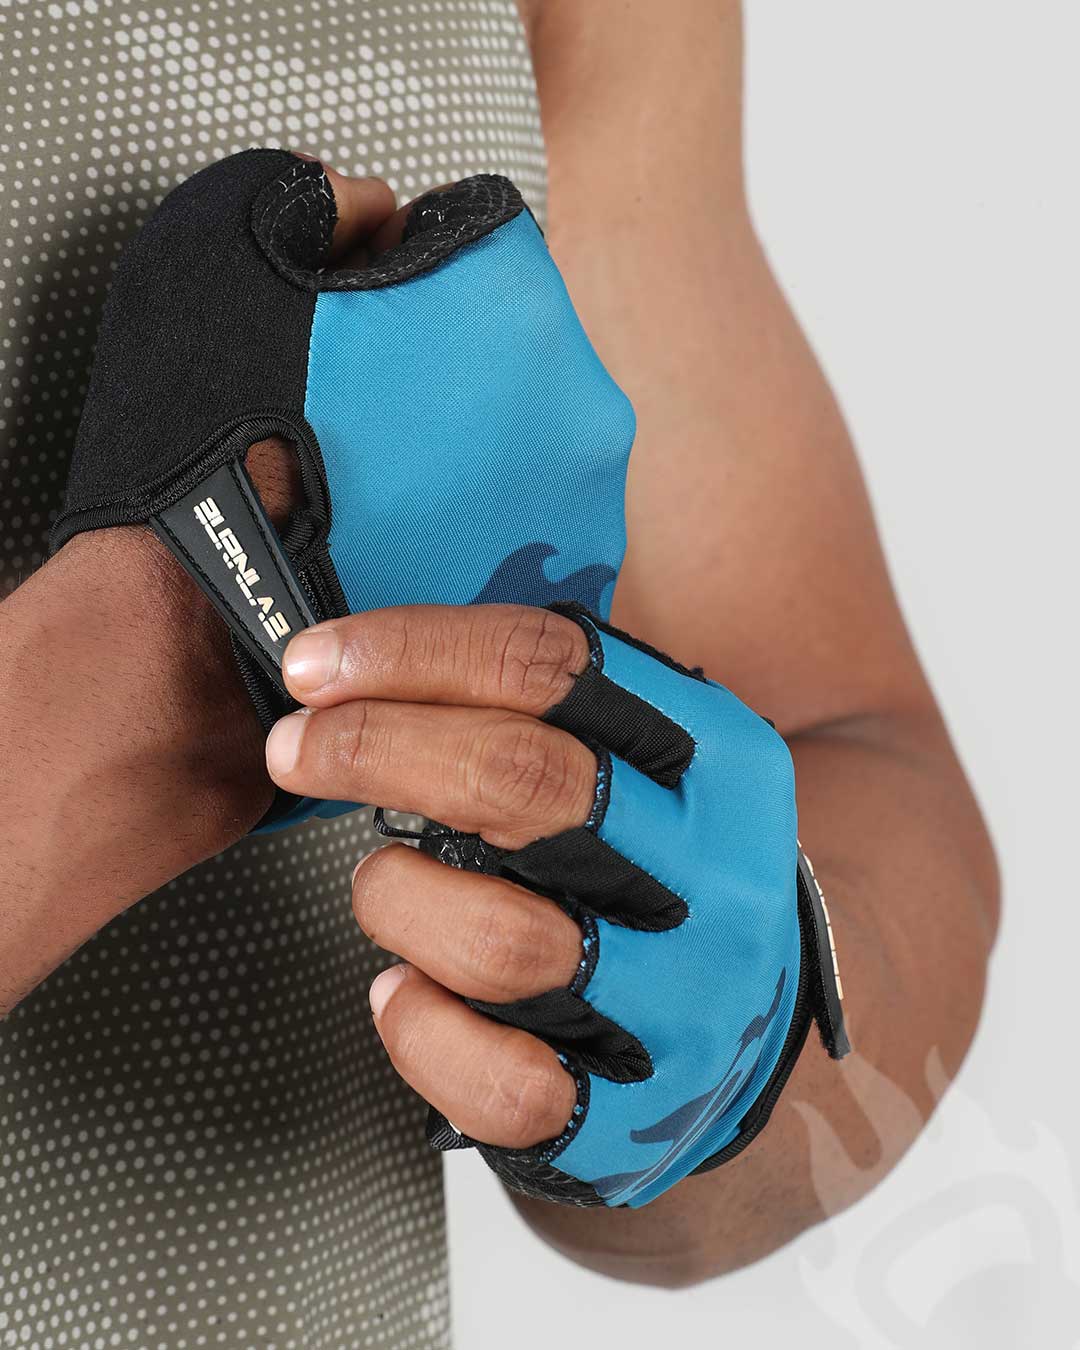 Flex Gym Gloves(Blue) - Burnlab.Co